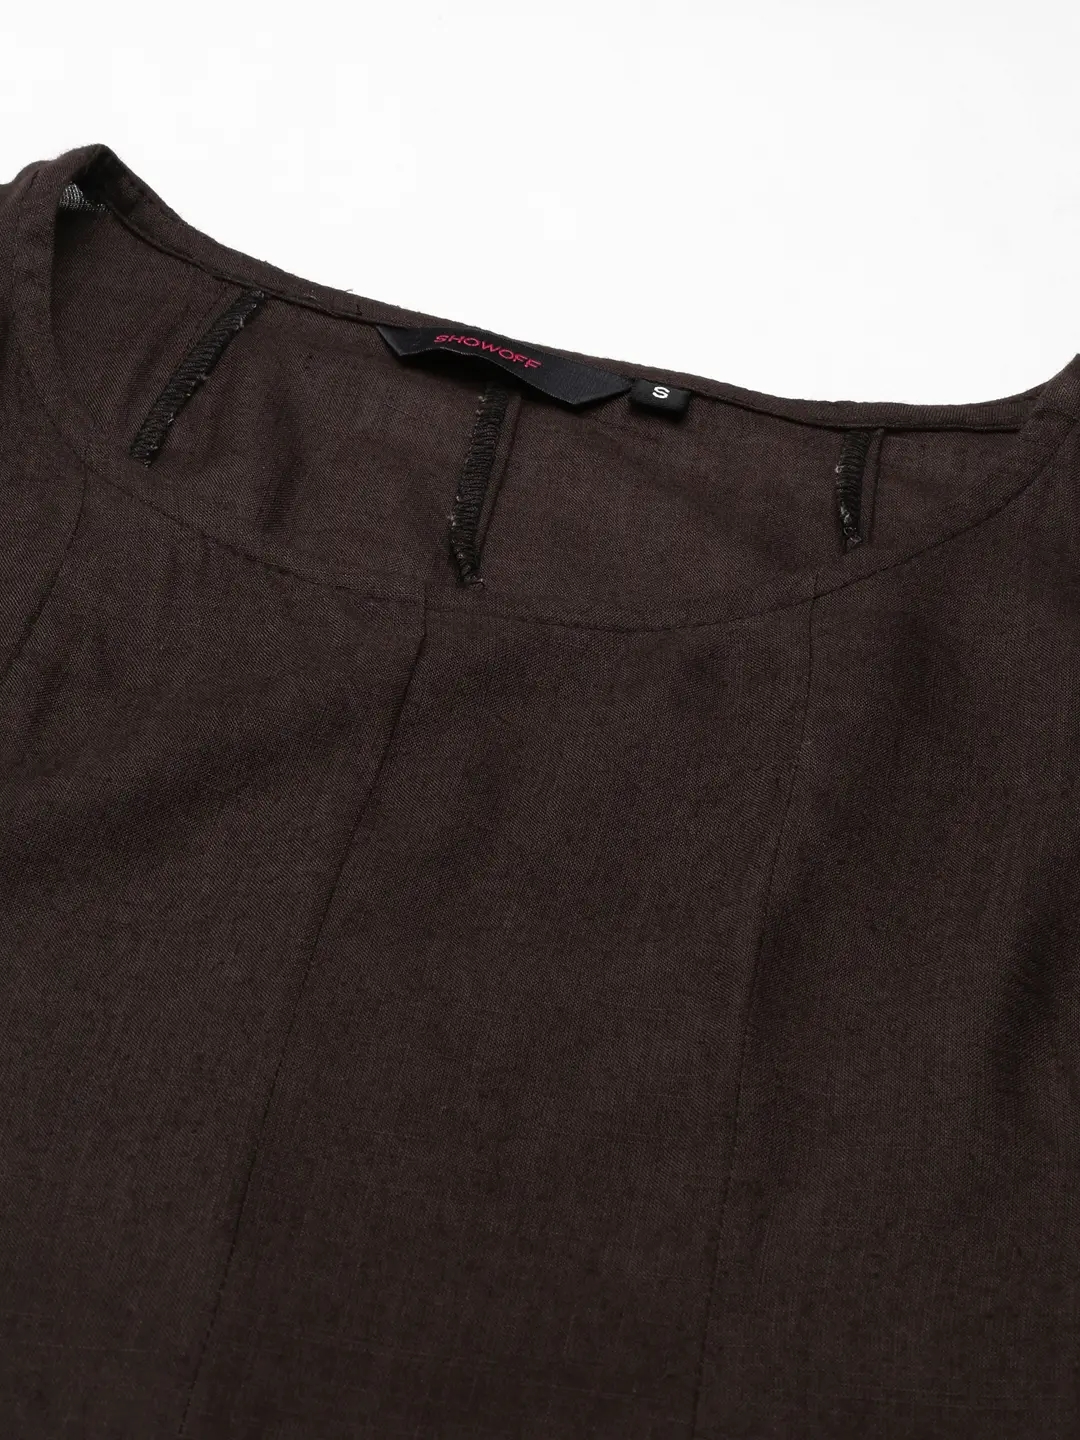 Women's Brown Cotton Solid Comfort Fit Kurtas